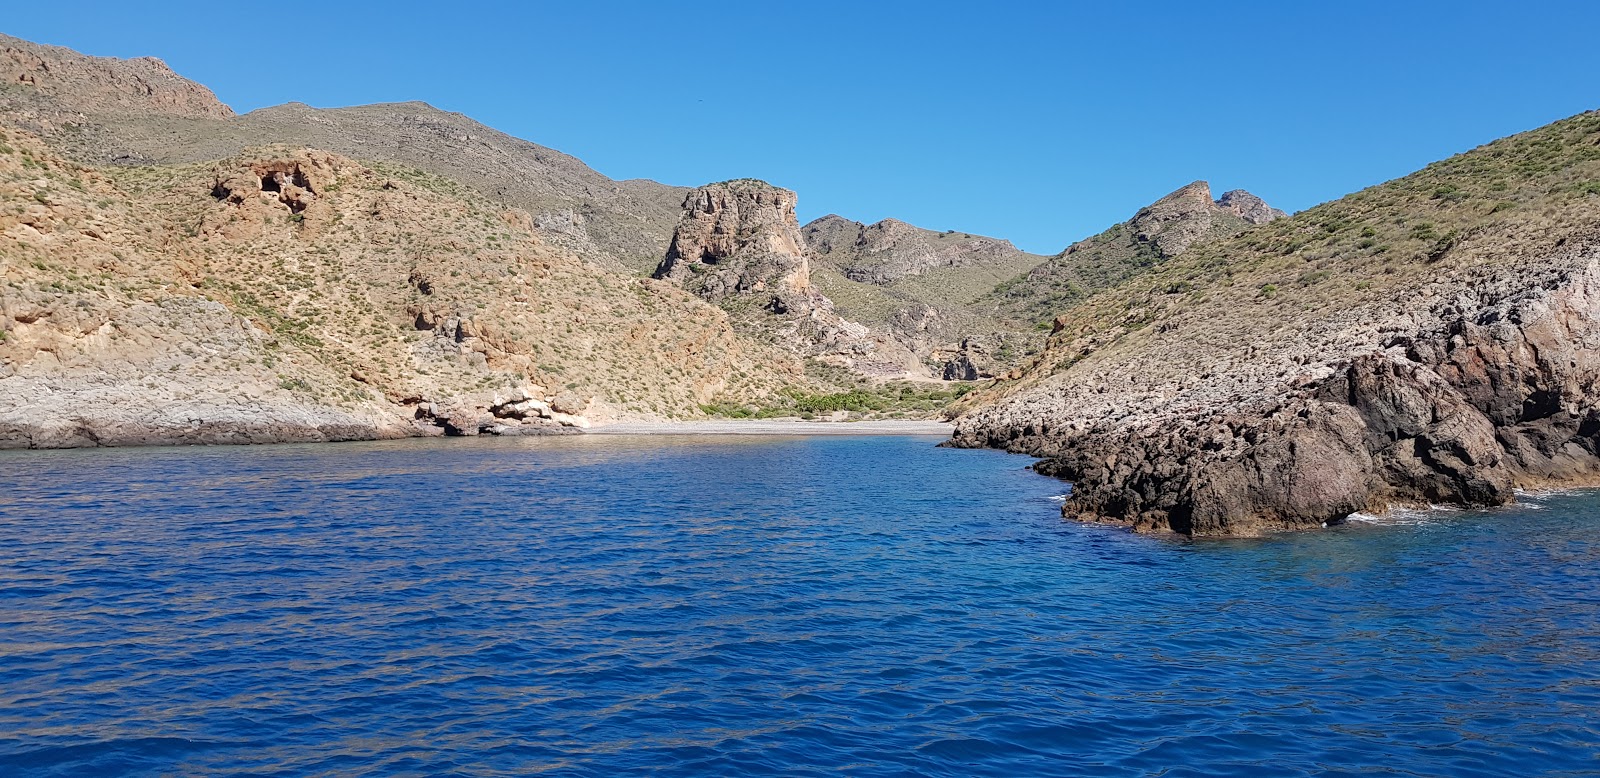 Playa Cala Cerrada'in fotoğrafı gri ince çakıl taş yüzey ile